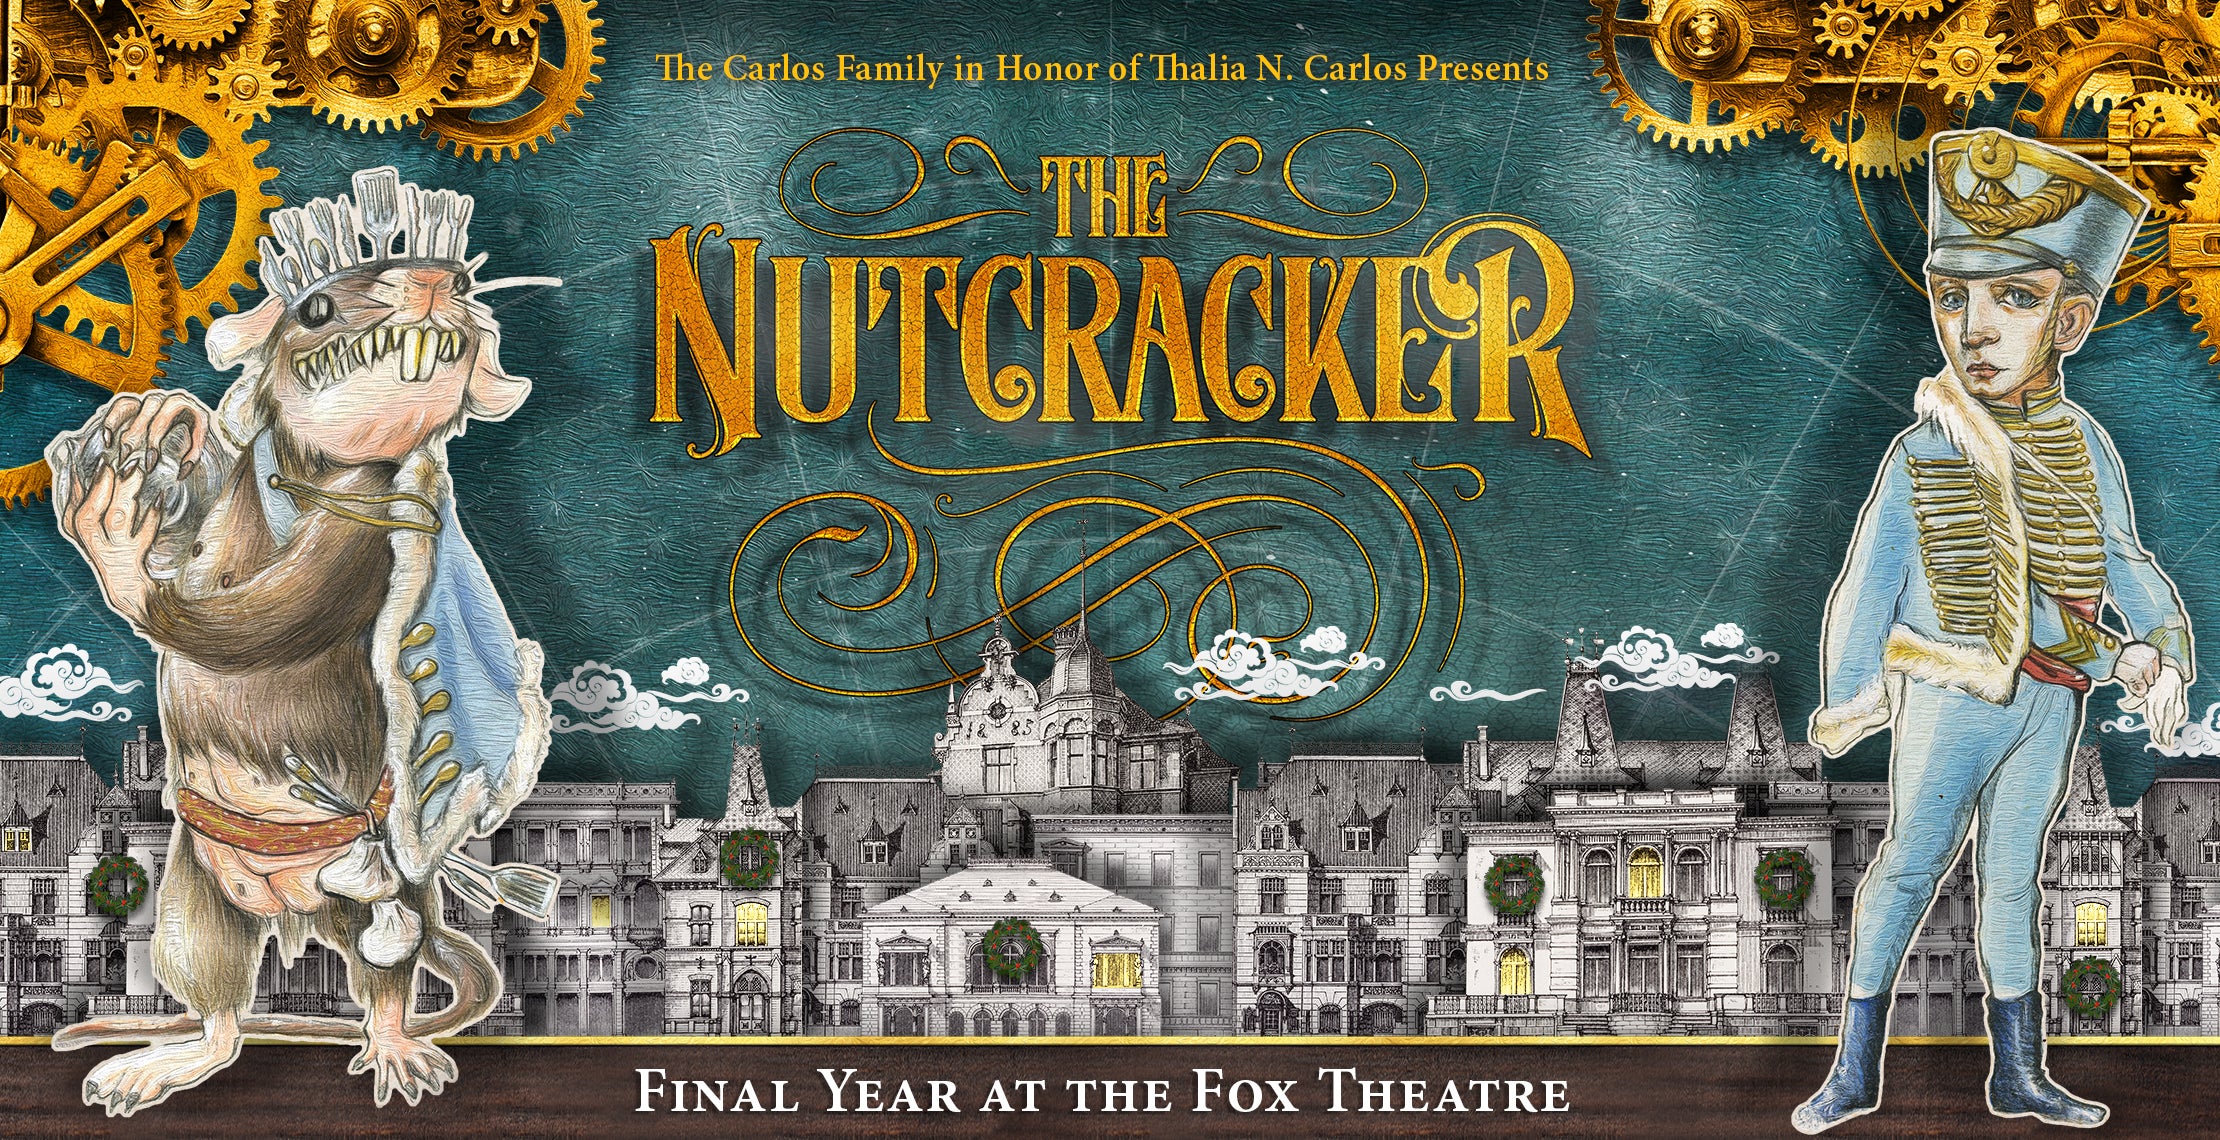 Atlanta Ballet presents The Nutcracker